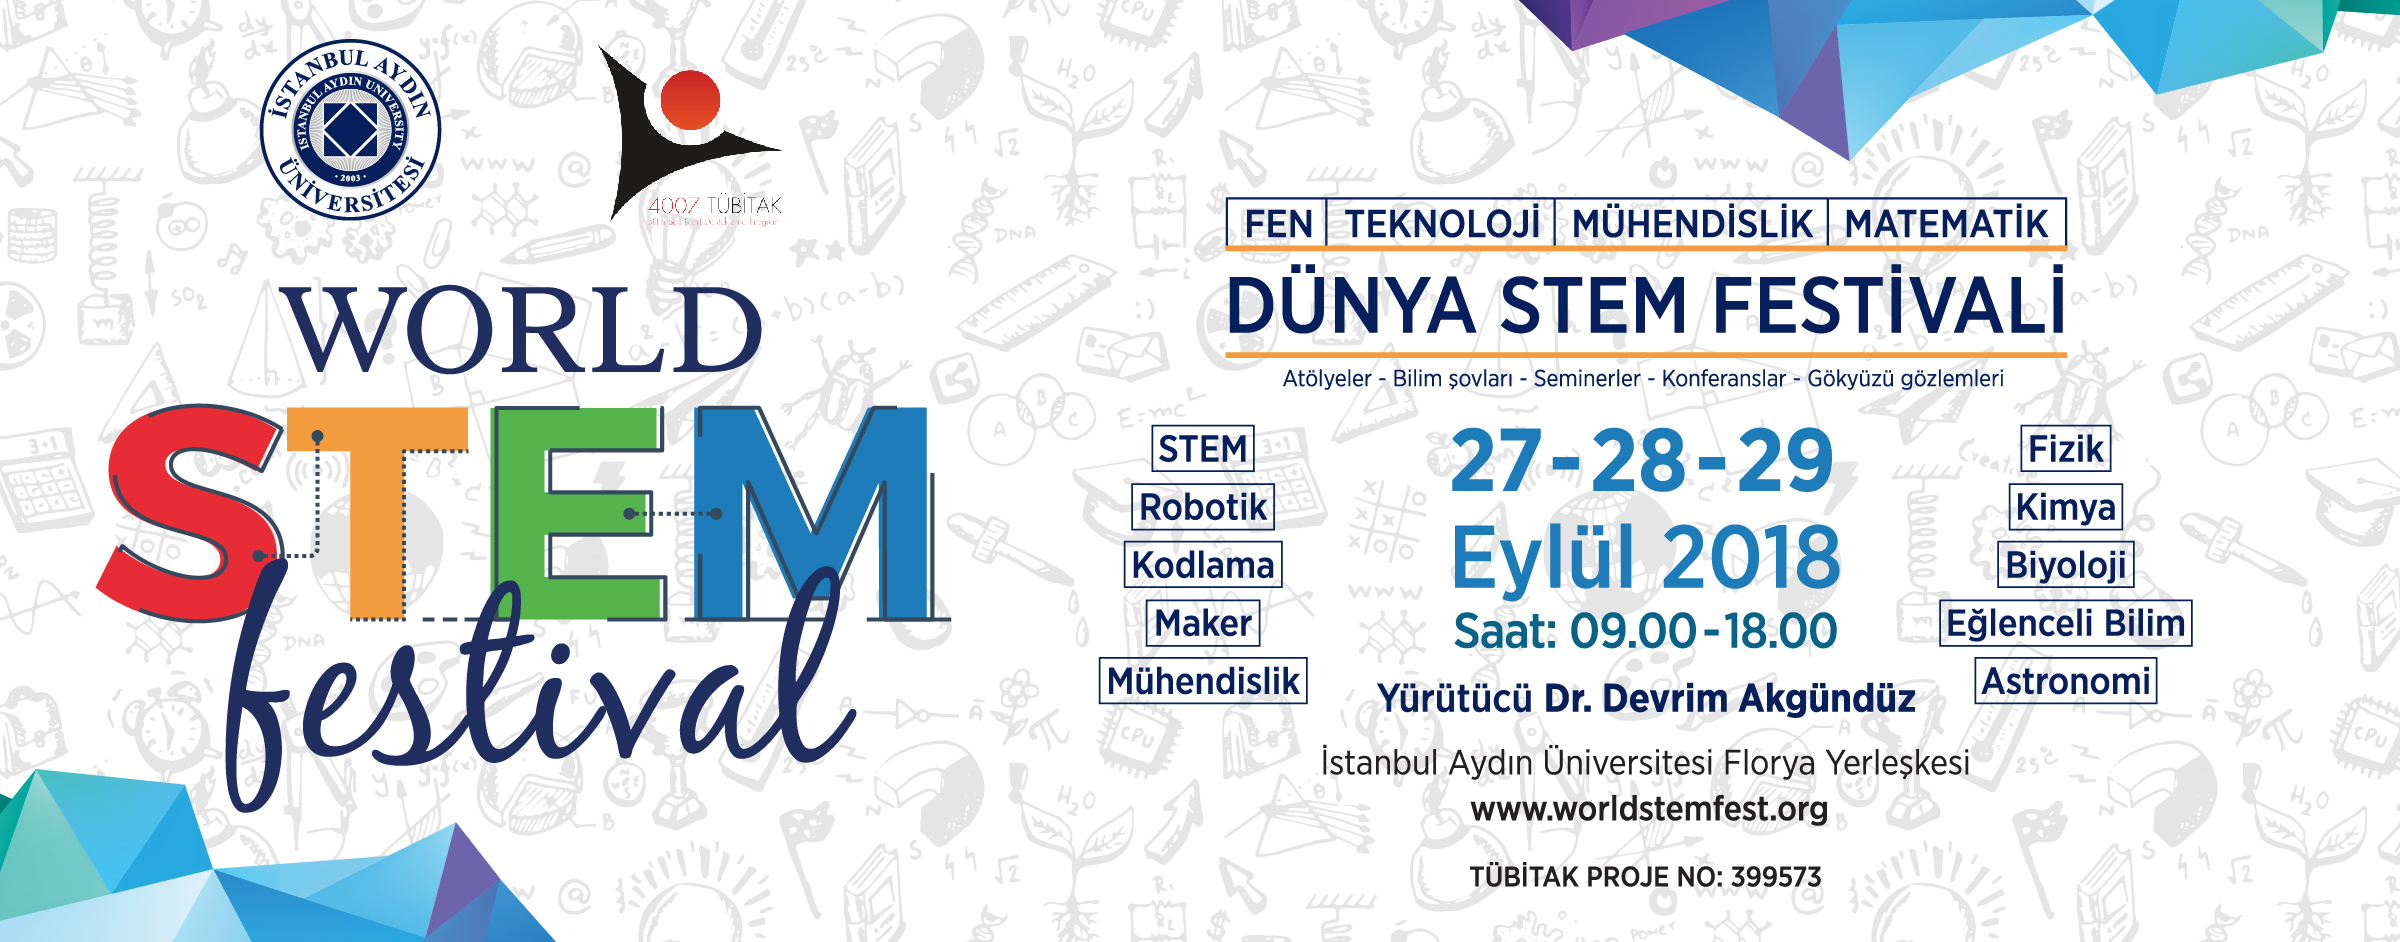 World STEM Festival